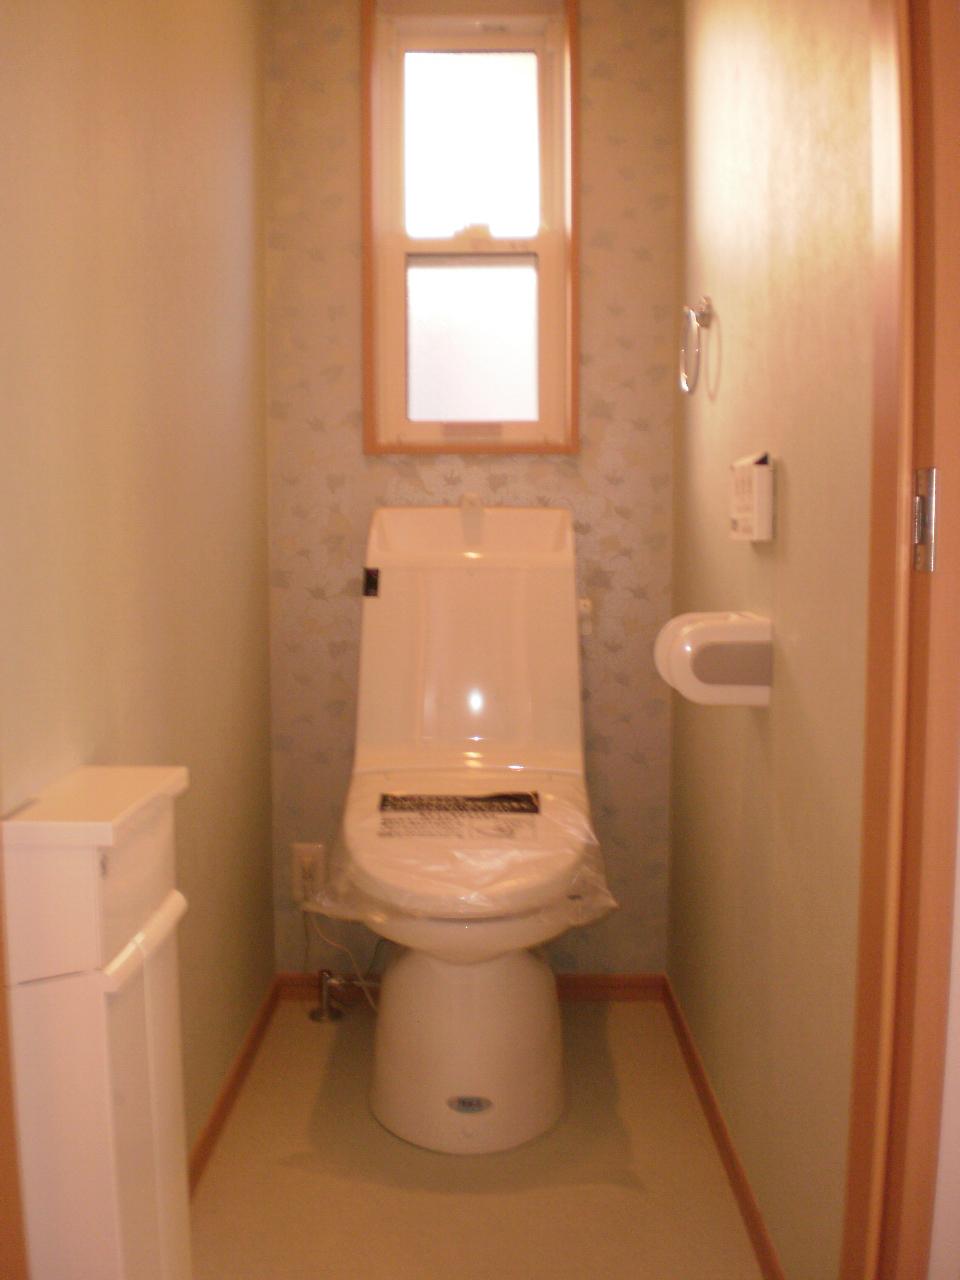 Toilet. Two places toilet